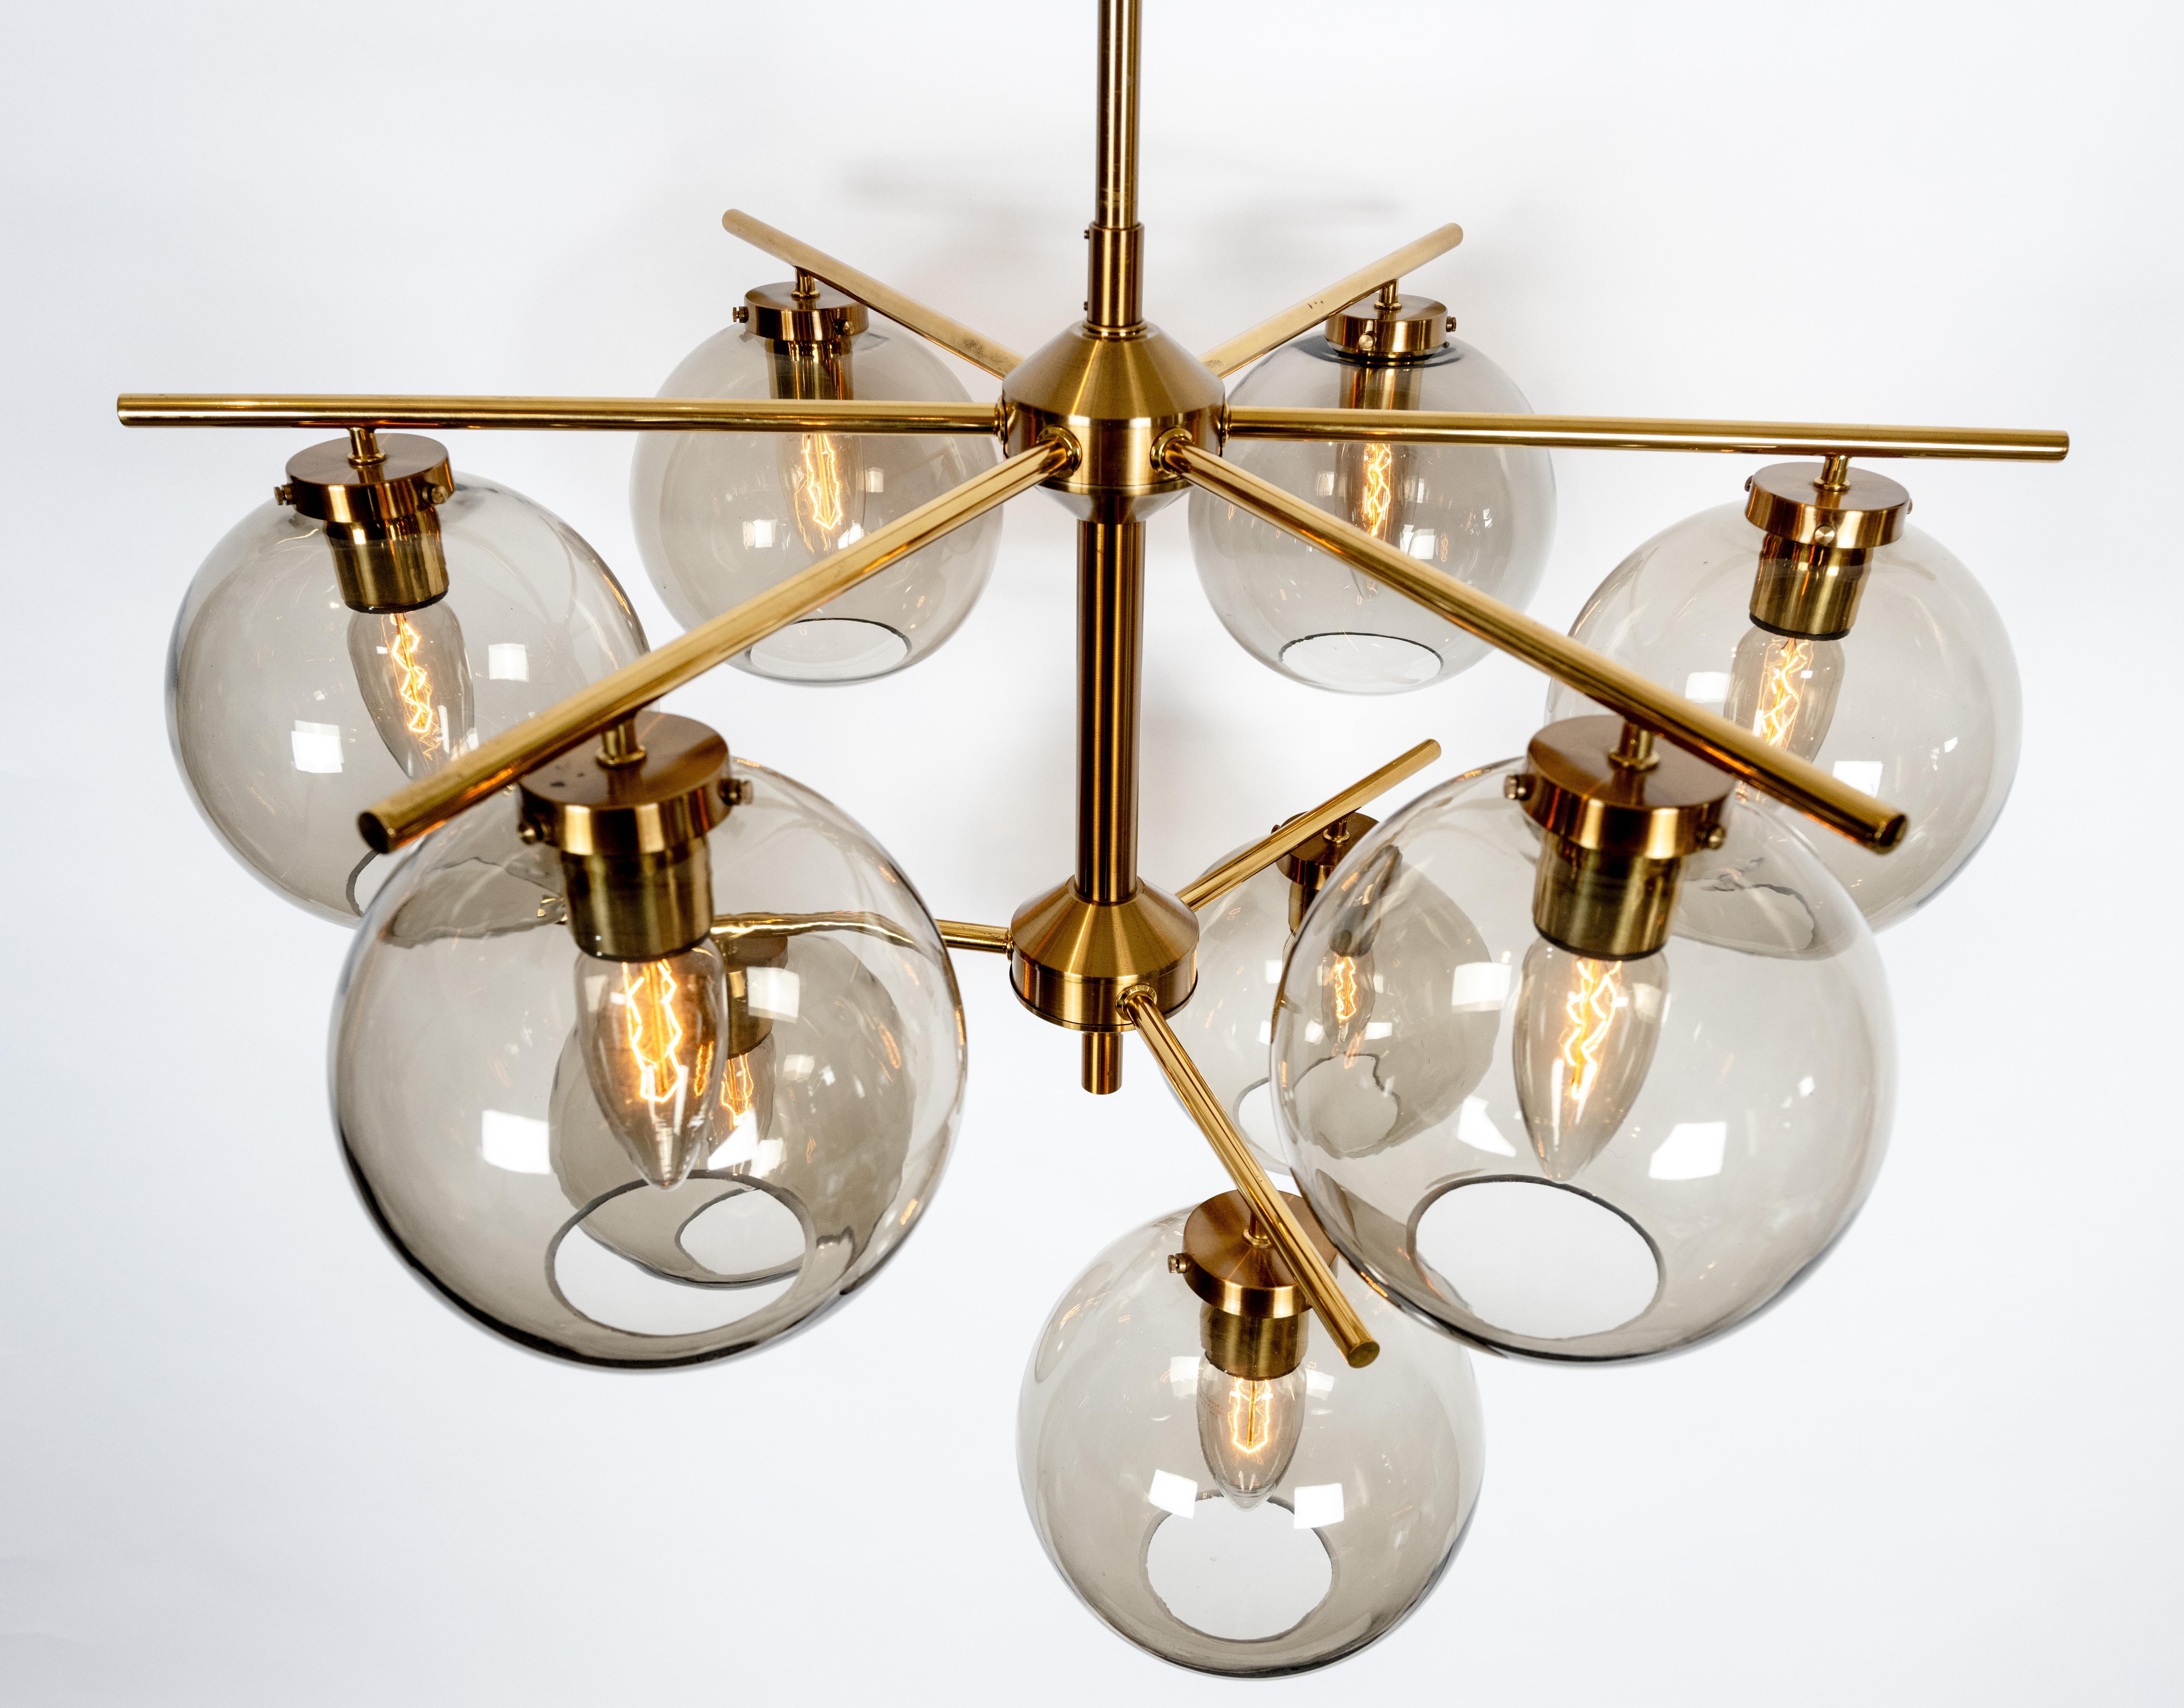 Un rare ensemble de quatre luminaires de plafond à neuf lumières de design contemporain conçus par Holger Johansson. Les cadres en laiton, légèrement patinés et laqués, sont dotés d'abat-jours ronds en verre fumé, chacun dissimulant une douille